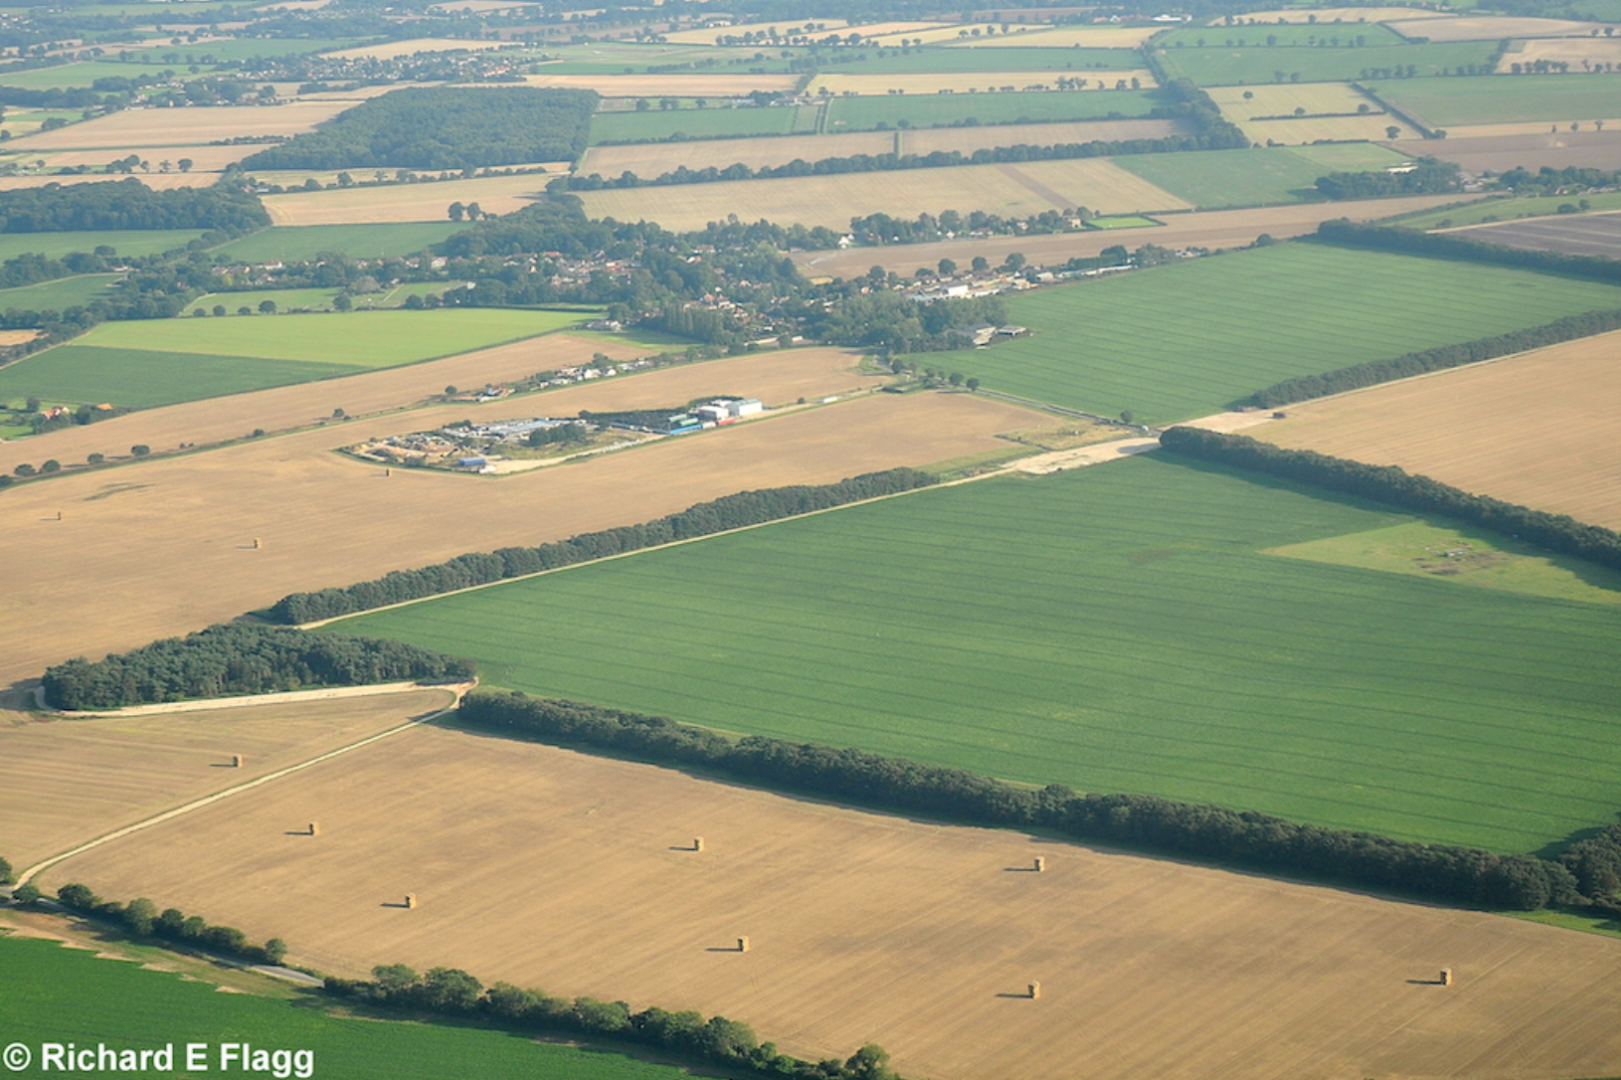 009Aerial View of RAF Rackheath Airfield - 1 September 2010.png